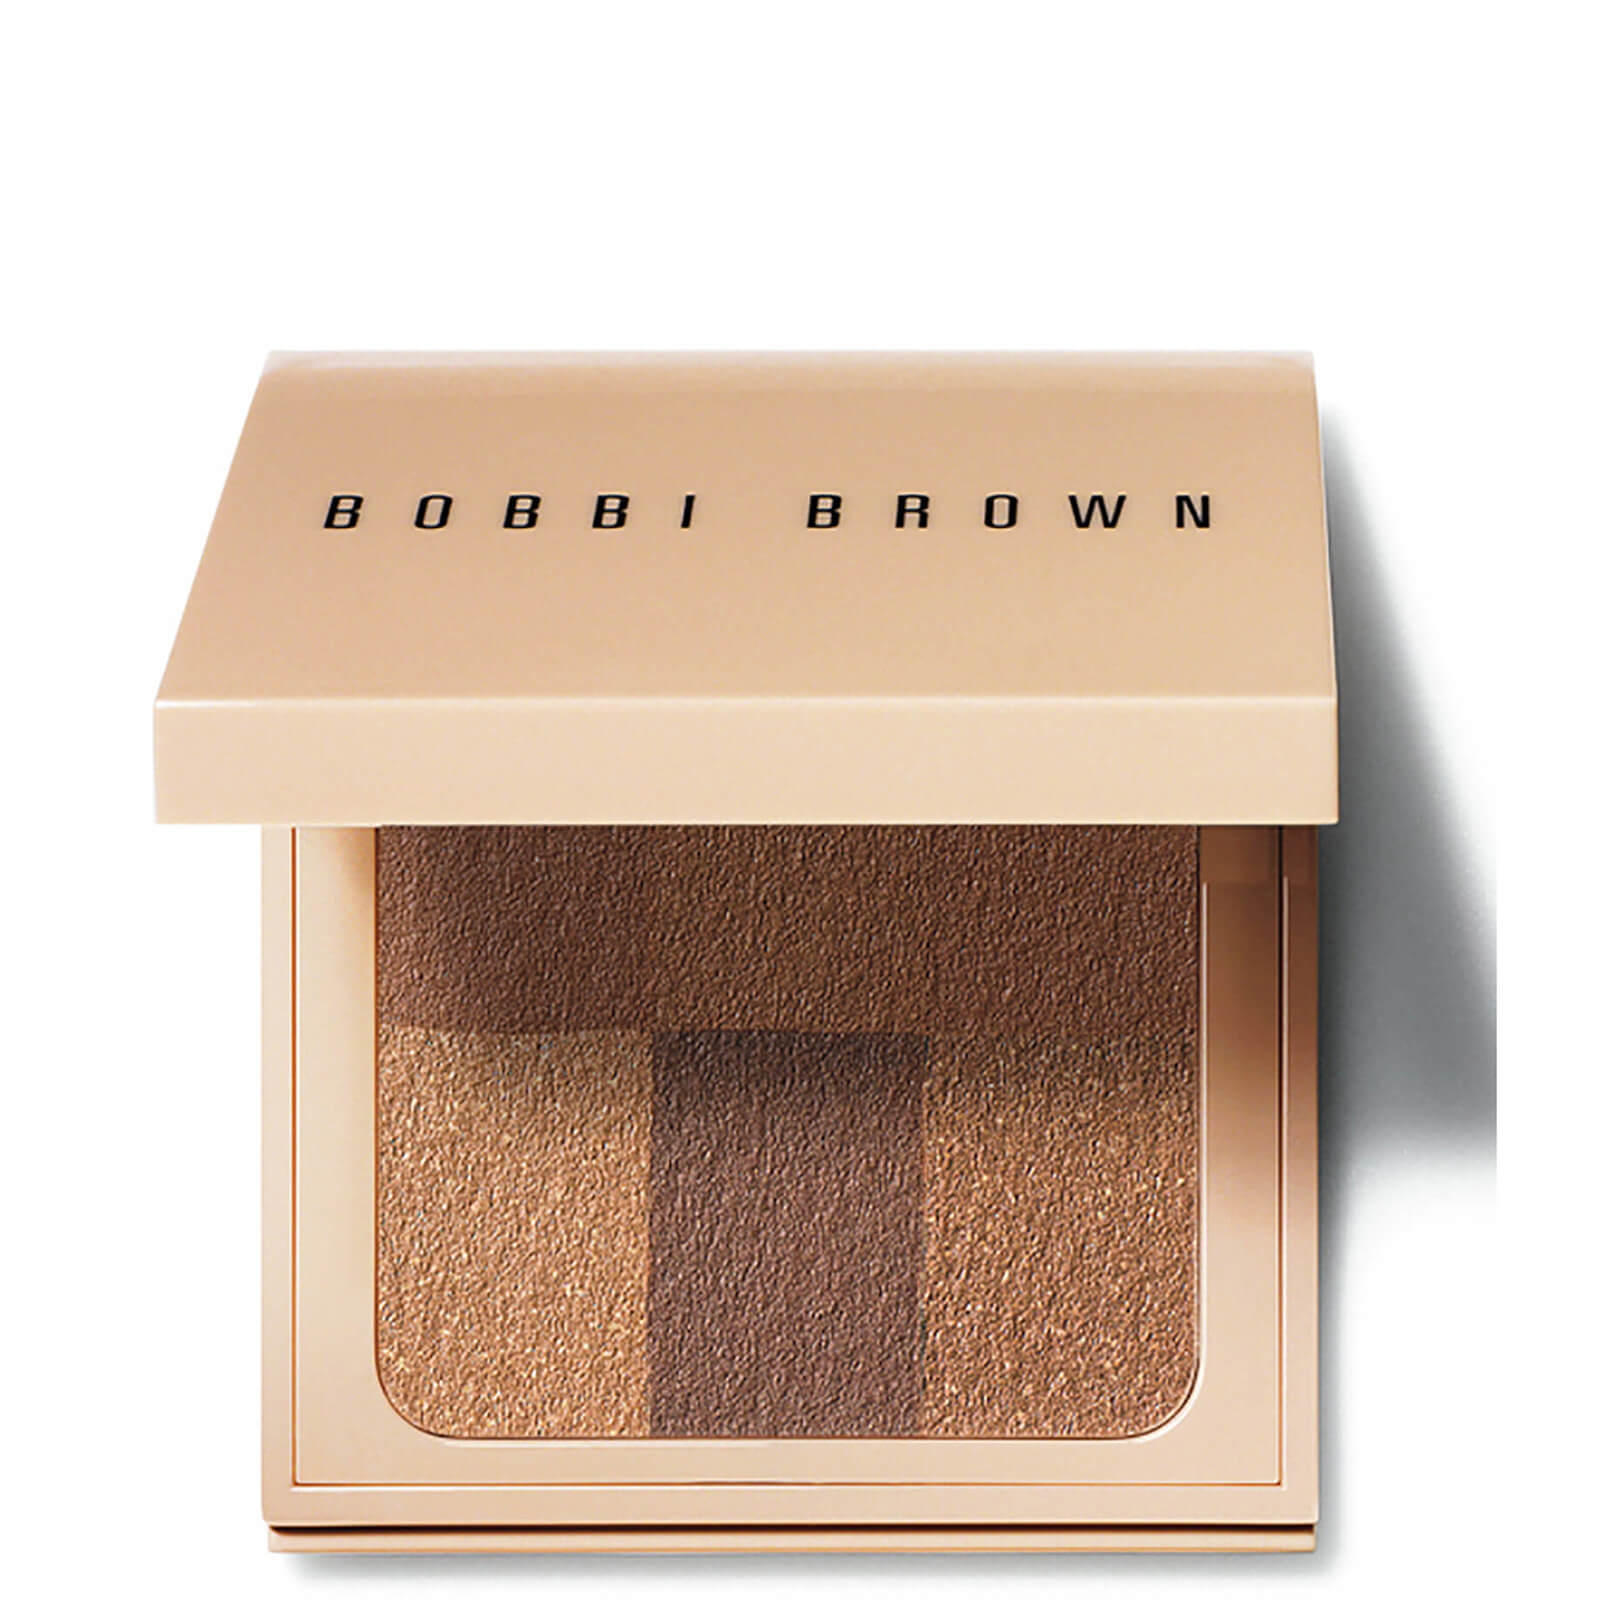 Bobbi Brown Nude Finish Illuminating Powder – Rich